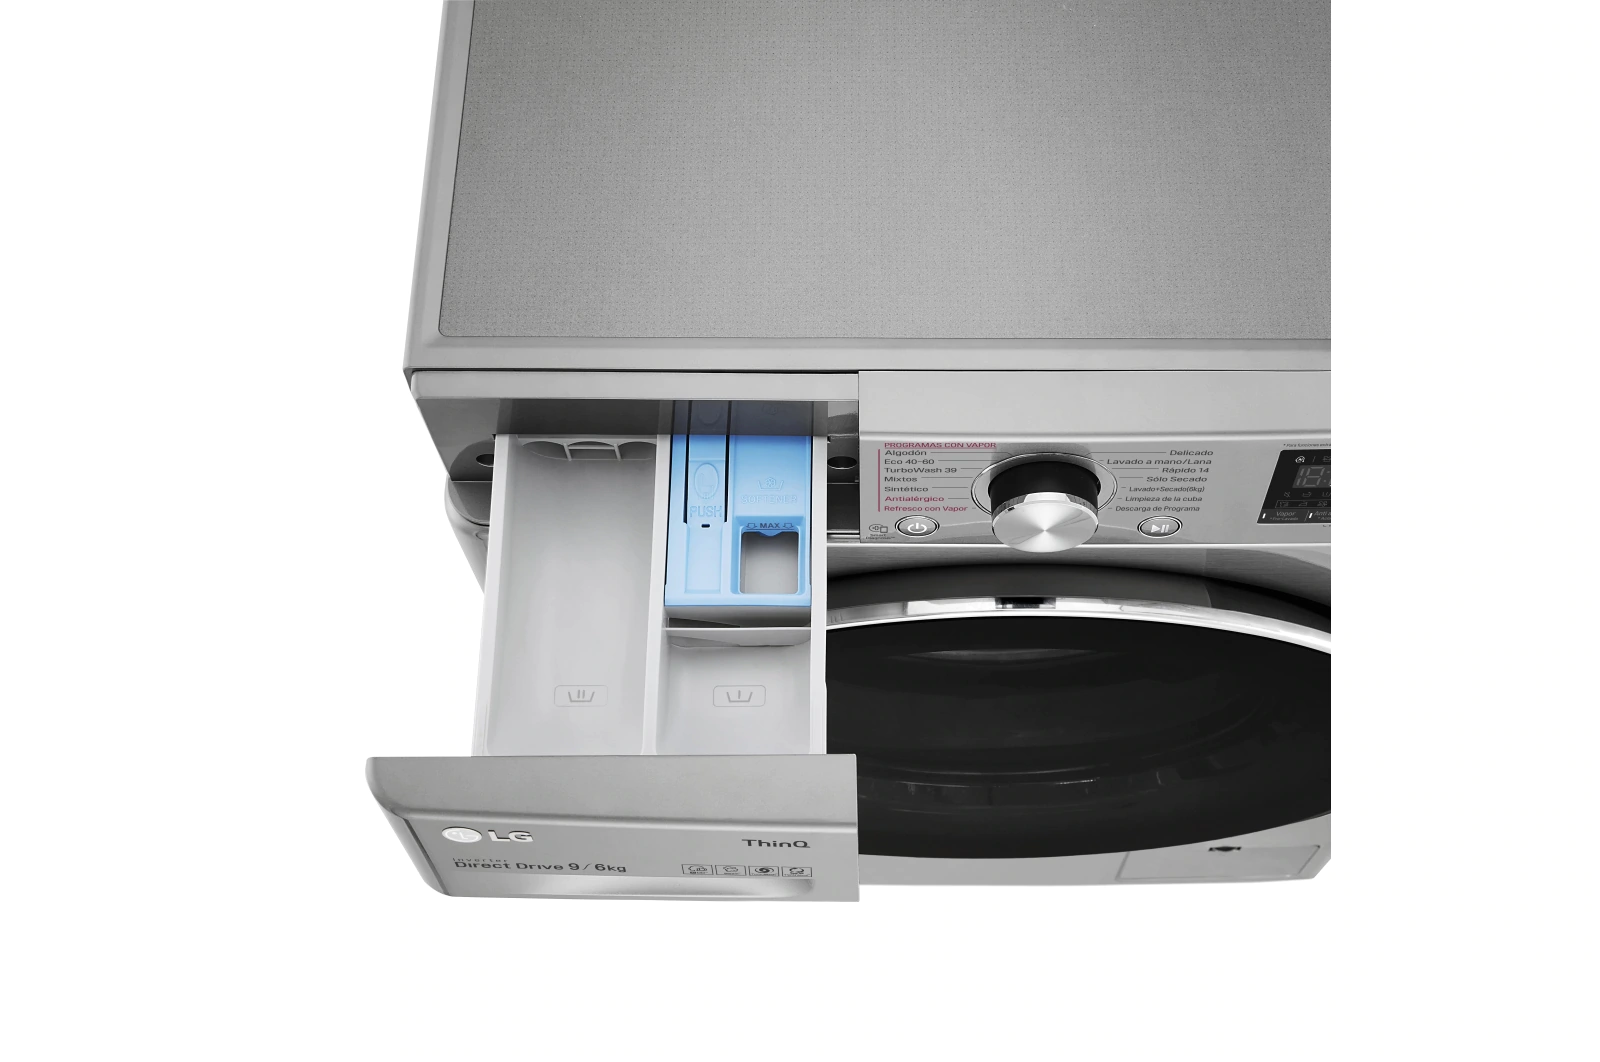 LavaSecadora LG F4DV7009S2S Inoxidable antihuellas, de 9 Kg en lavado a 1400 rpm y 6 Kg en secado, combinado con Vapor, conexión WiFi ThinQ | Clase A - 5